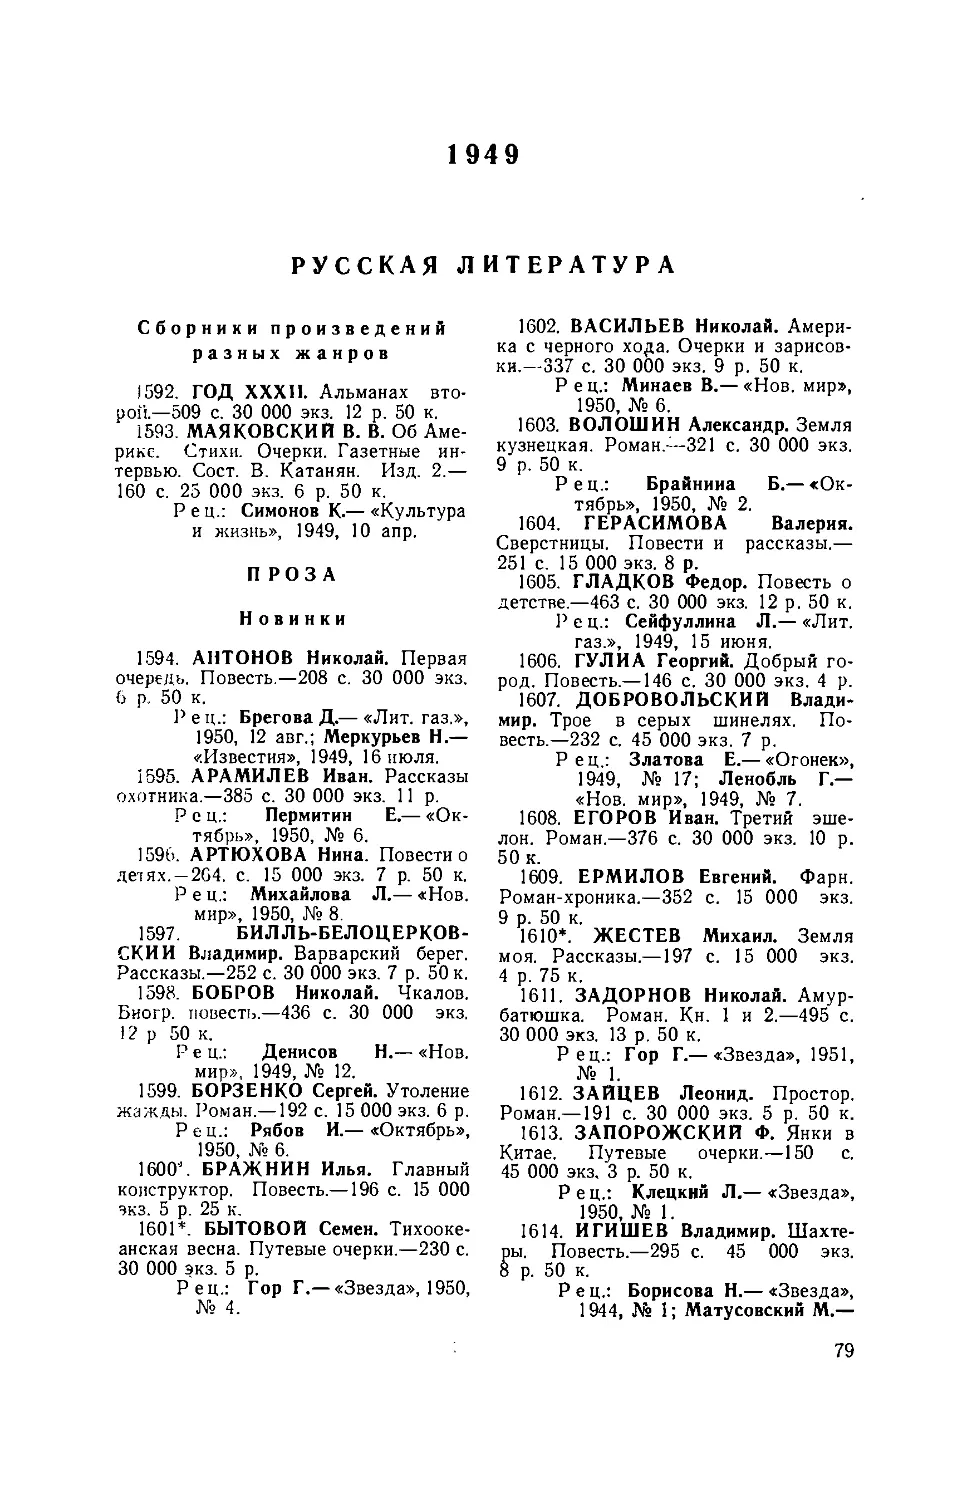 1949. Русская литература